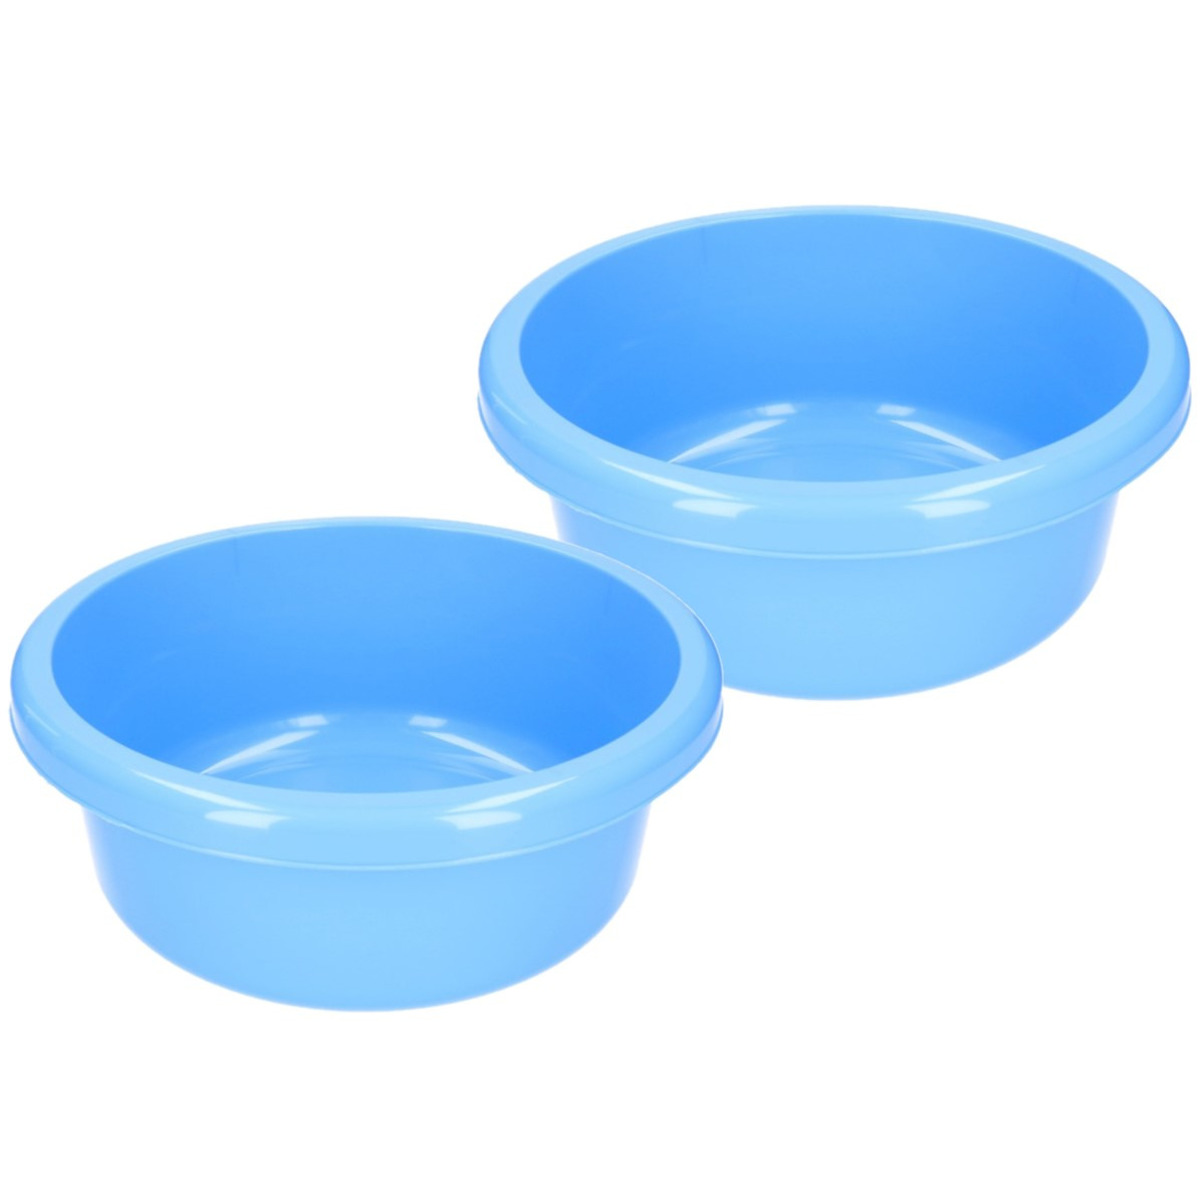 Set van 2x stuks ronde afwasteiltjes / afwasbakken - 6,2 liter - blauw - Kunststof afwasteil / handwas camping